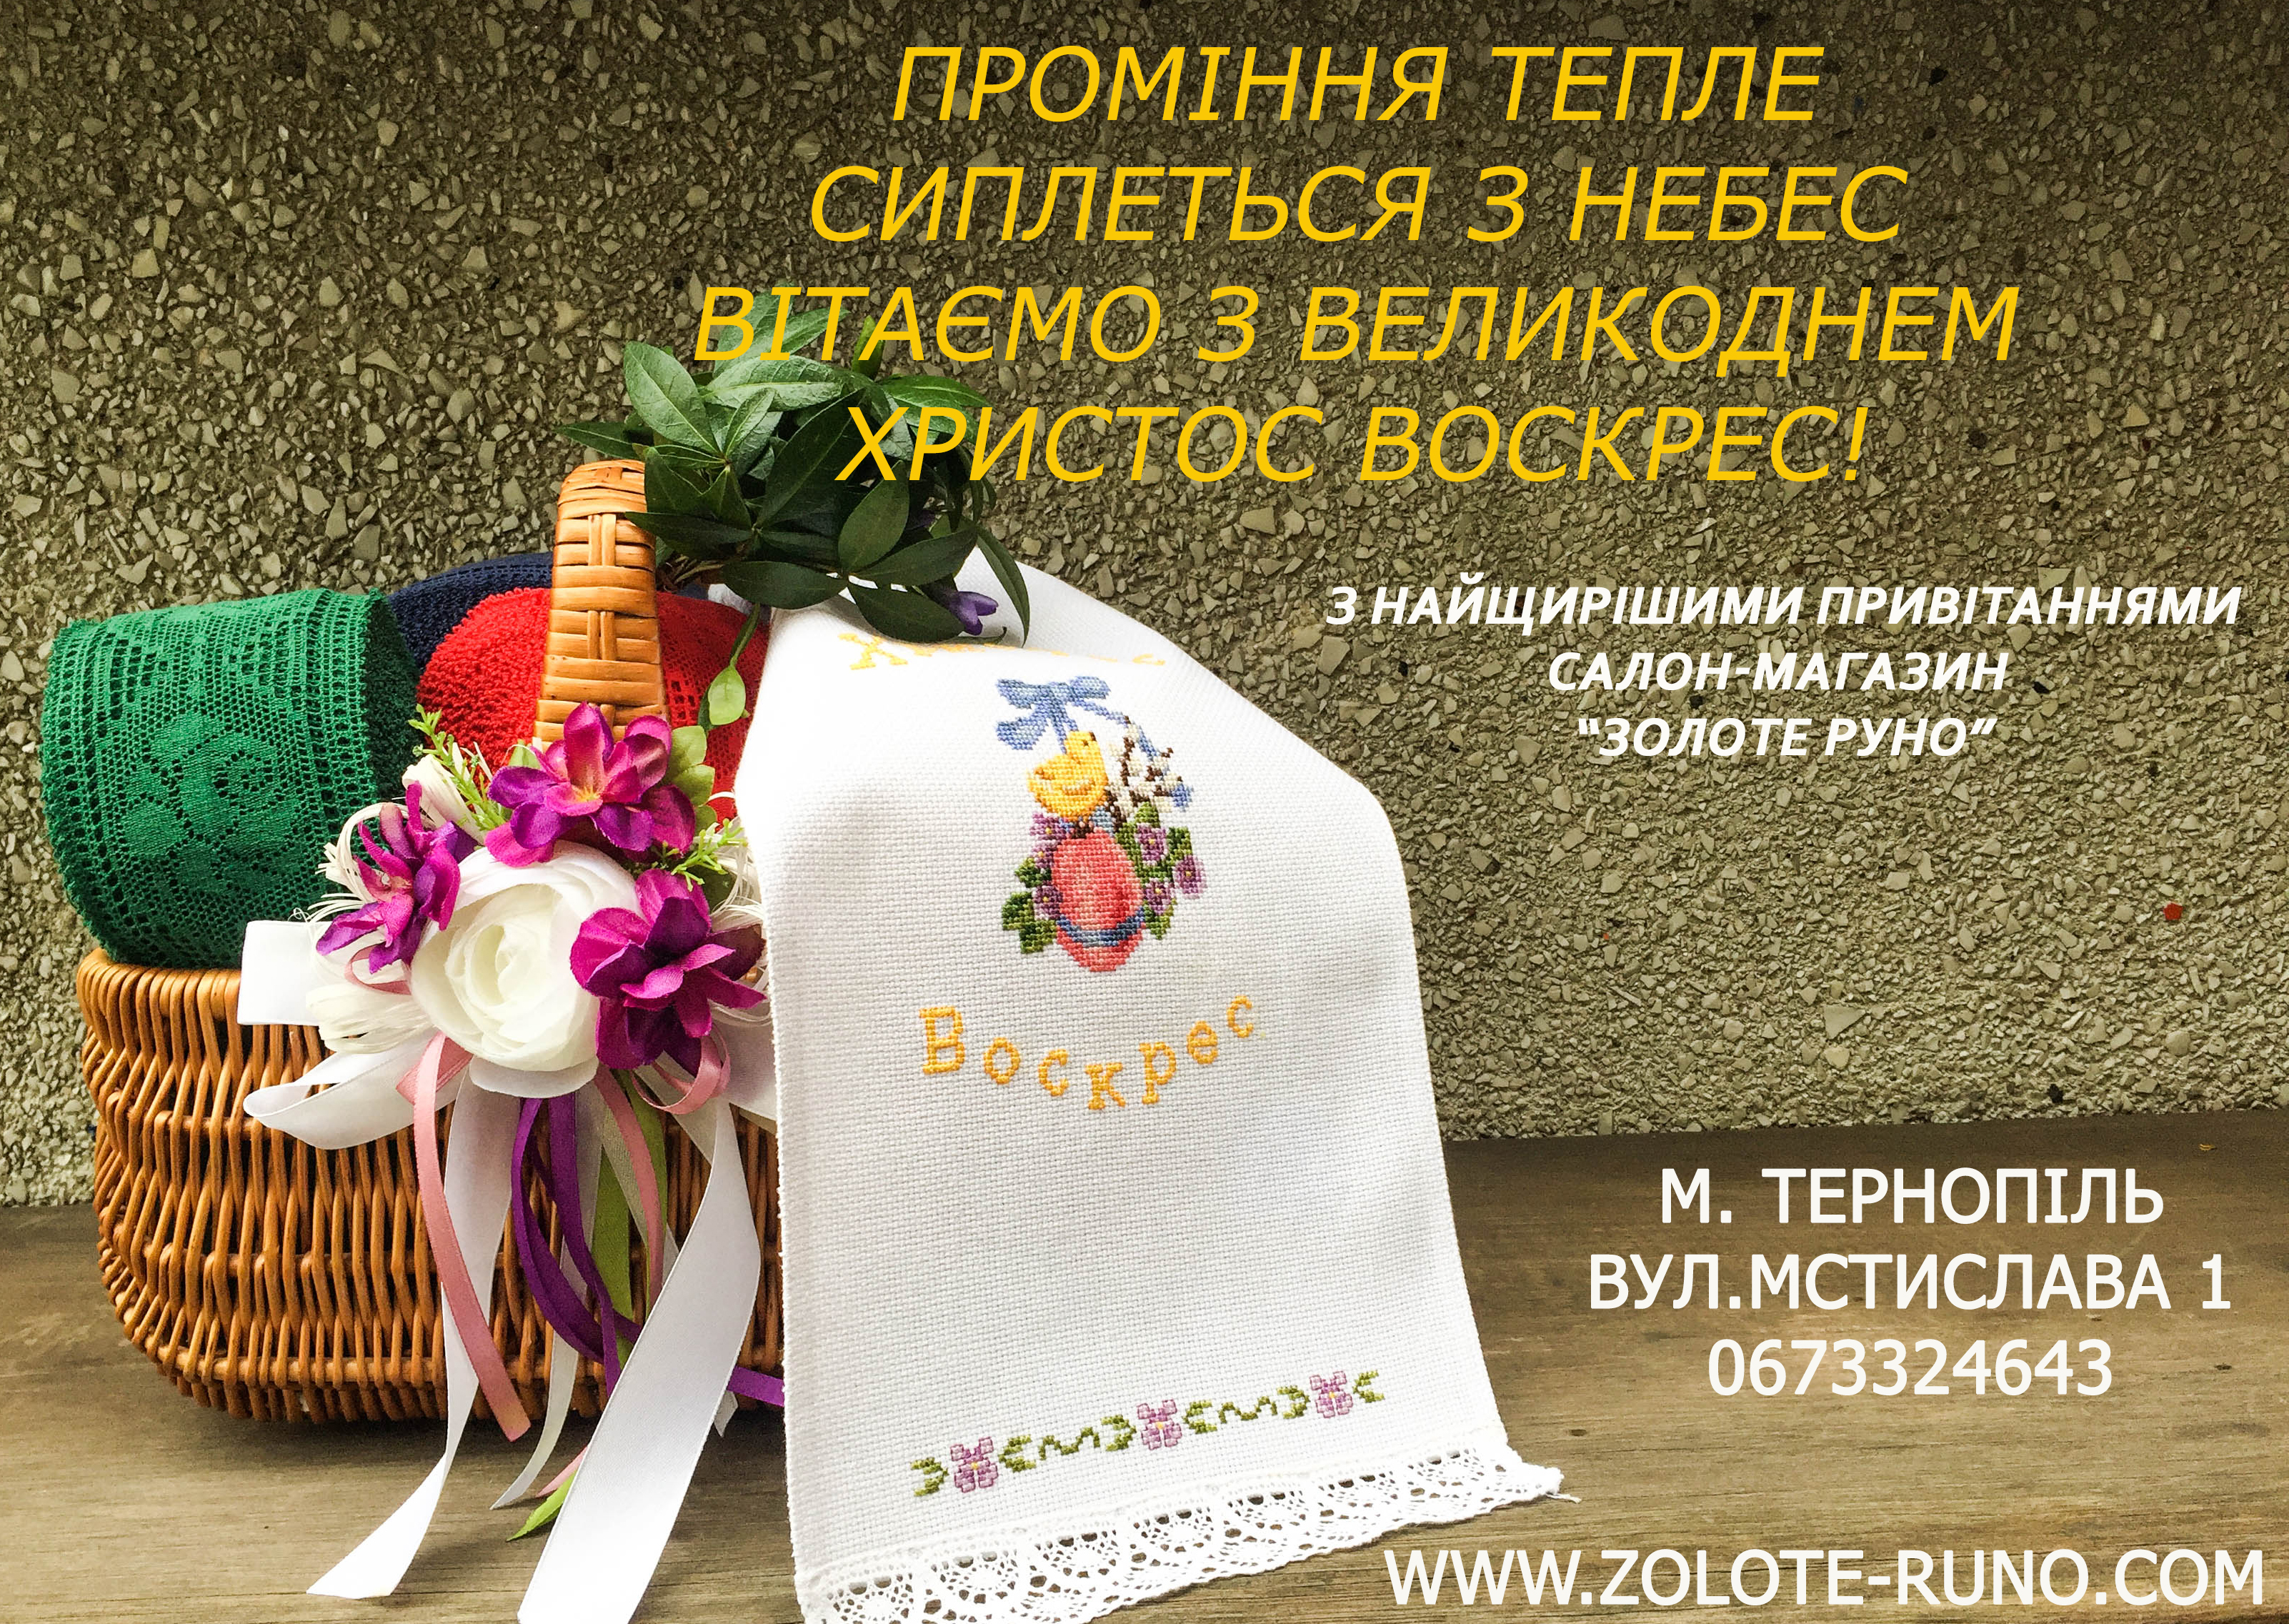 Пасхальные поздравления от Коллектива Салона-магазина "Золотое Руно"